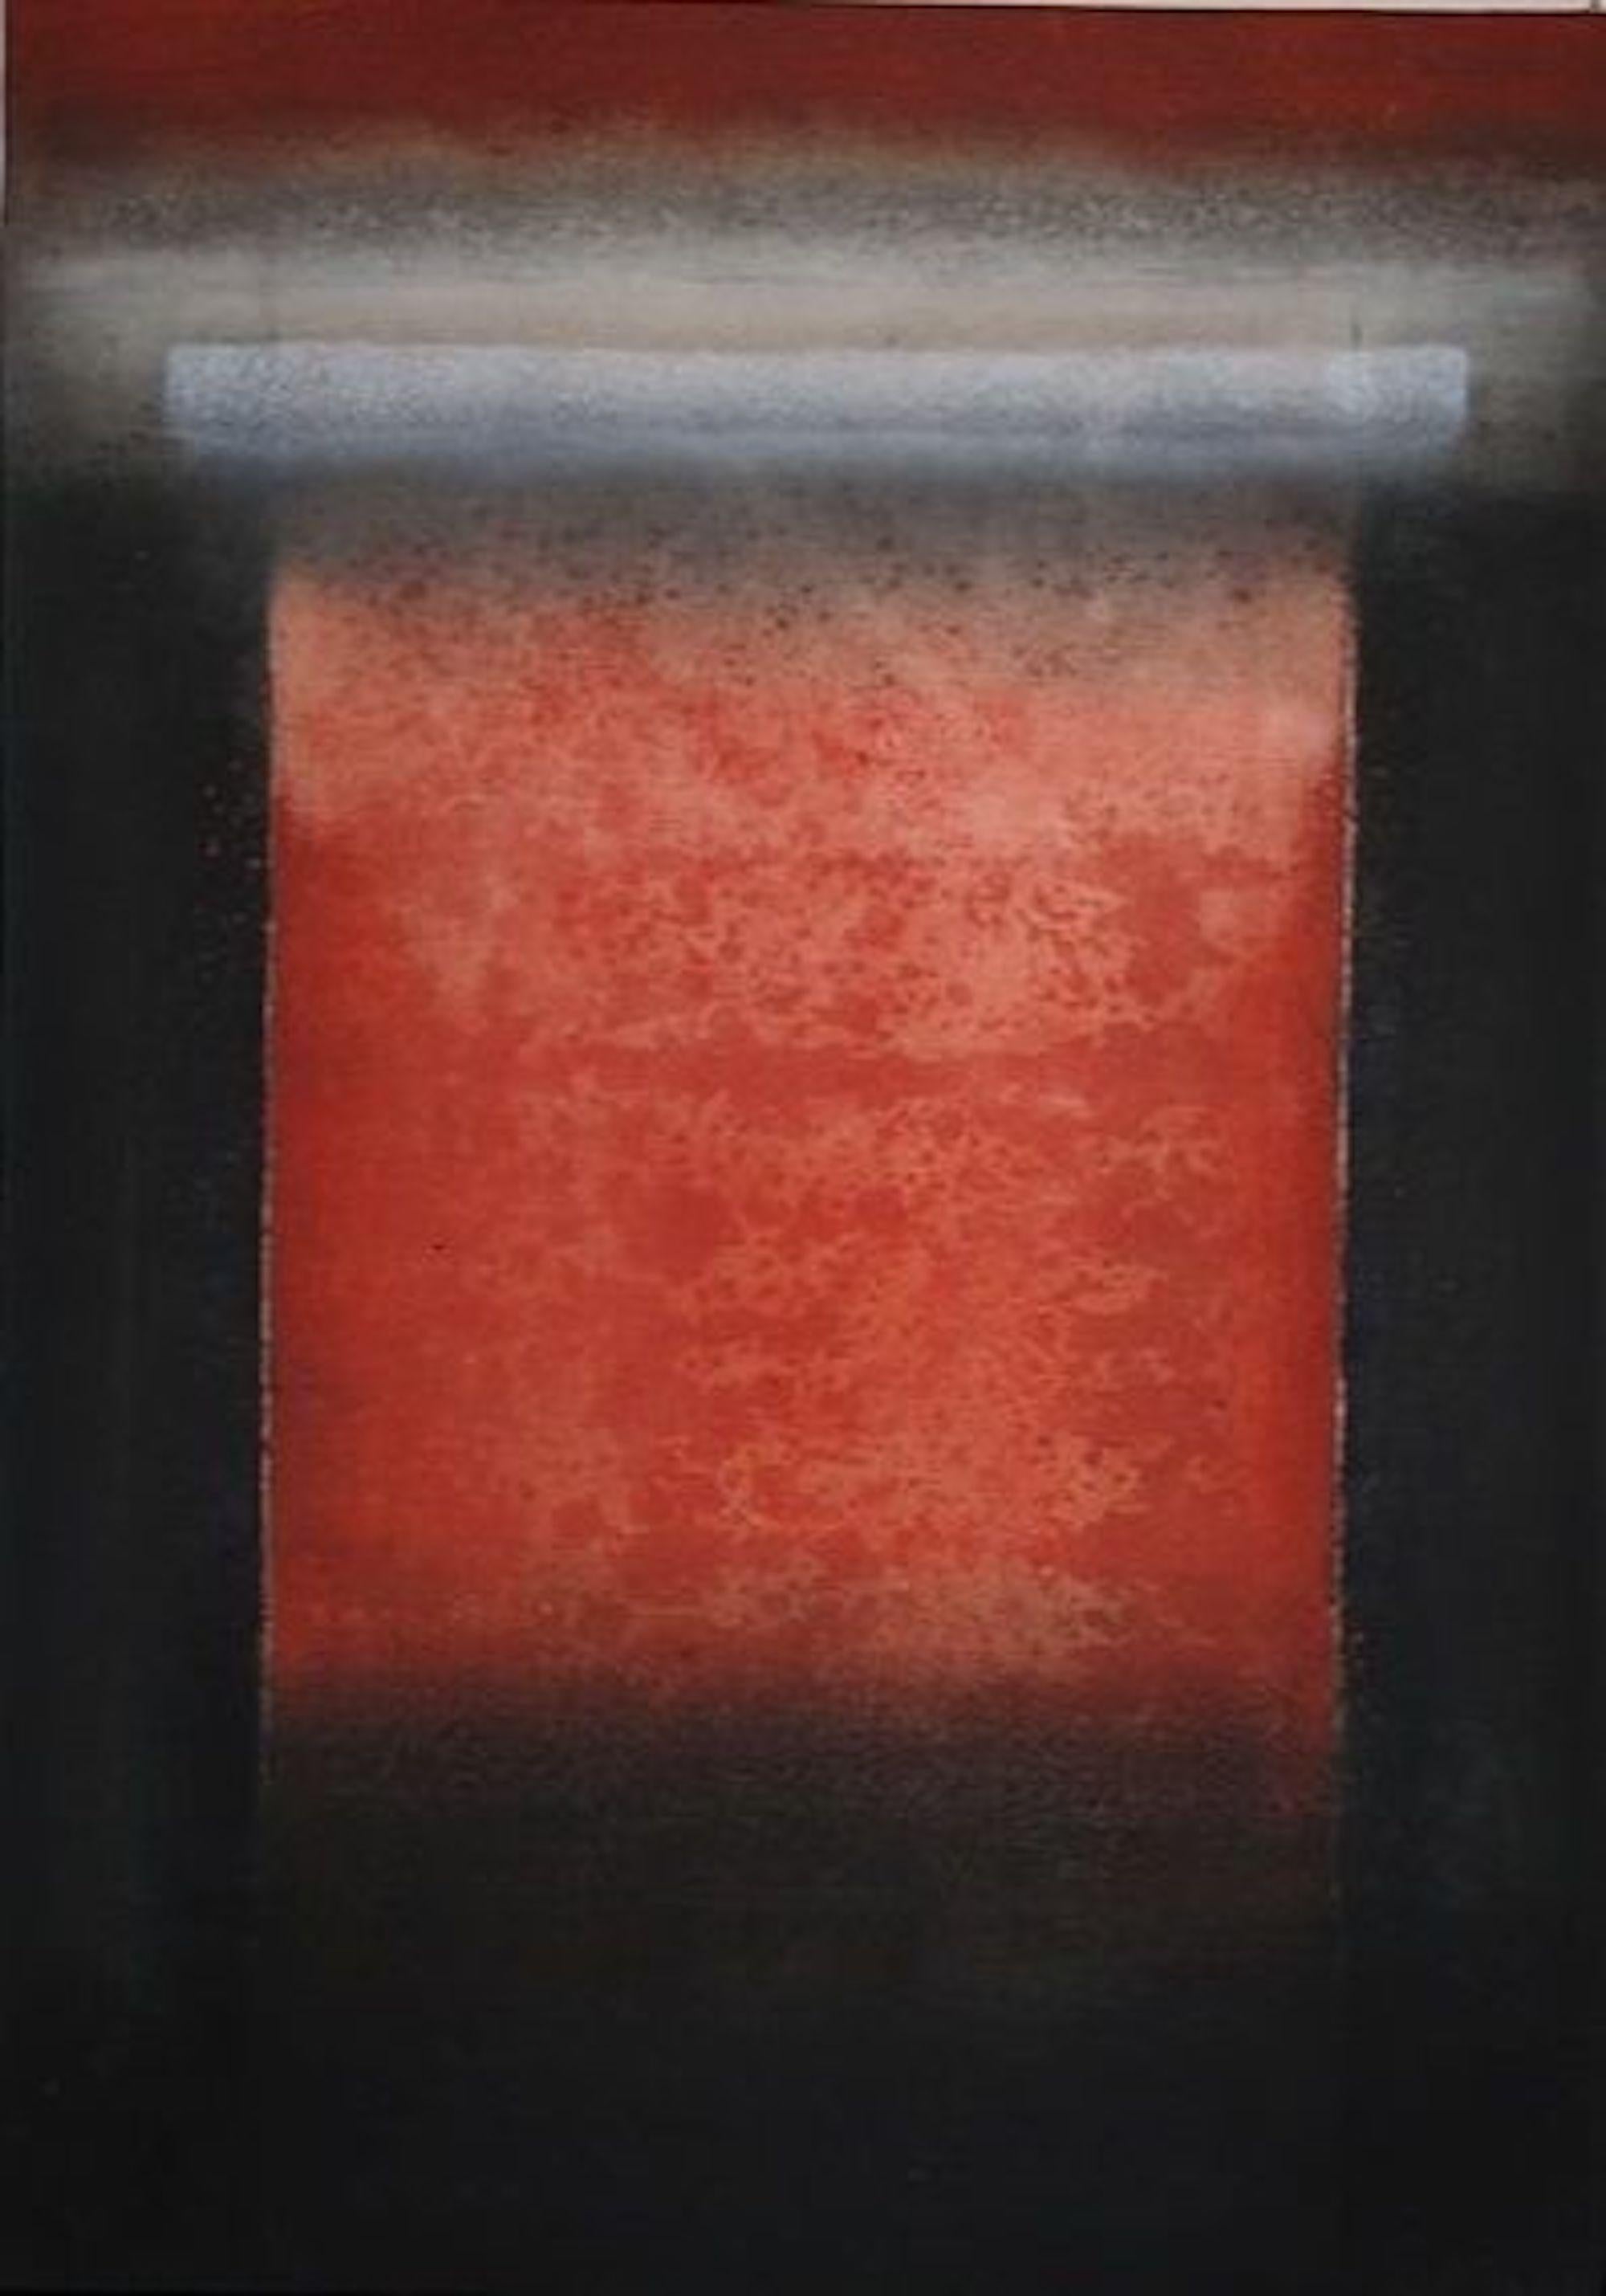 Elvire Ferle Abstract Painting – Ohne Titel VII von Ferle - Abstraktes Gemälde, Linien, rote und schwarze Töne, spirituell